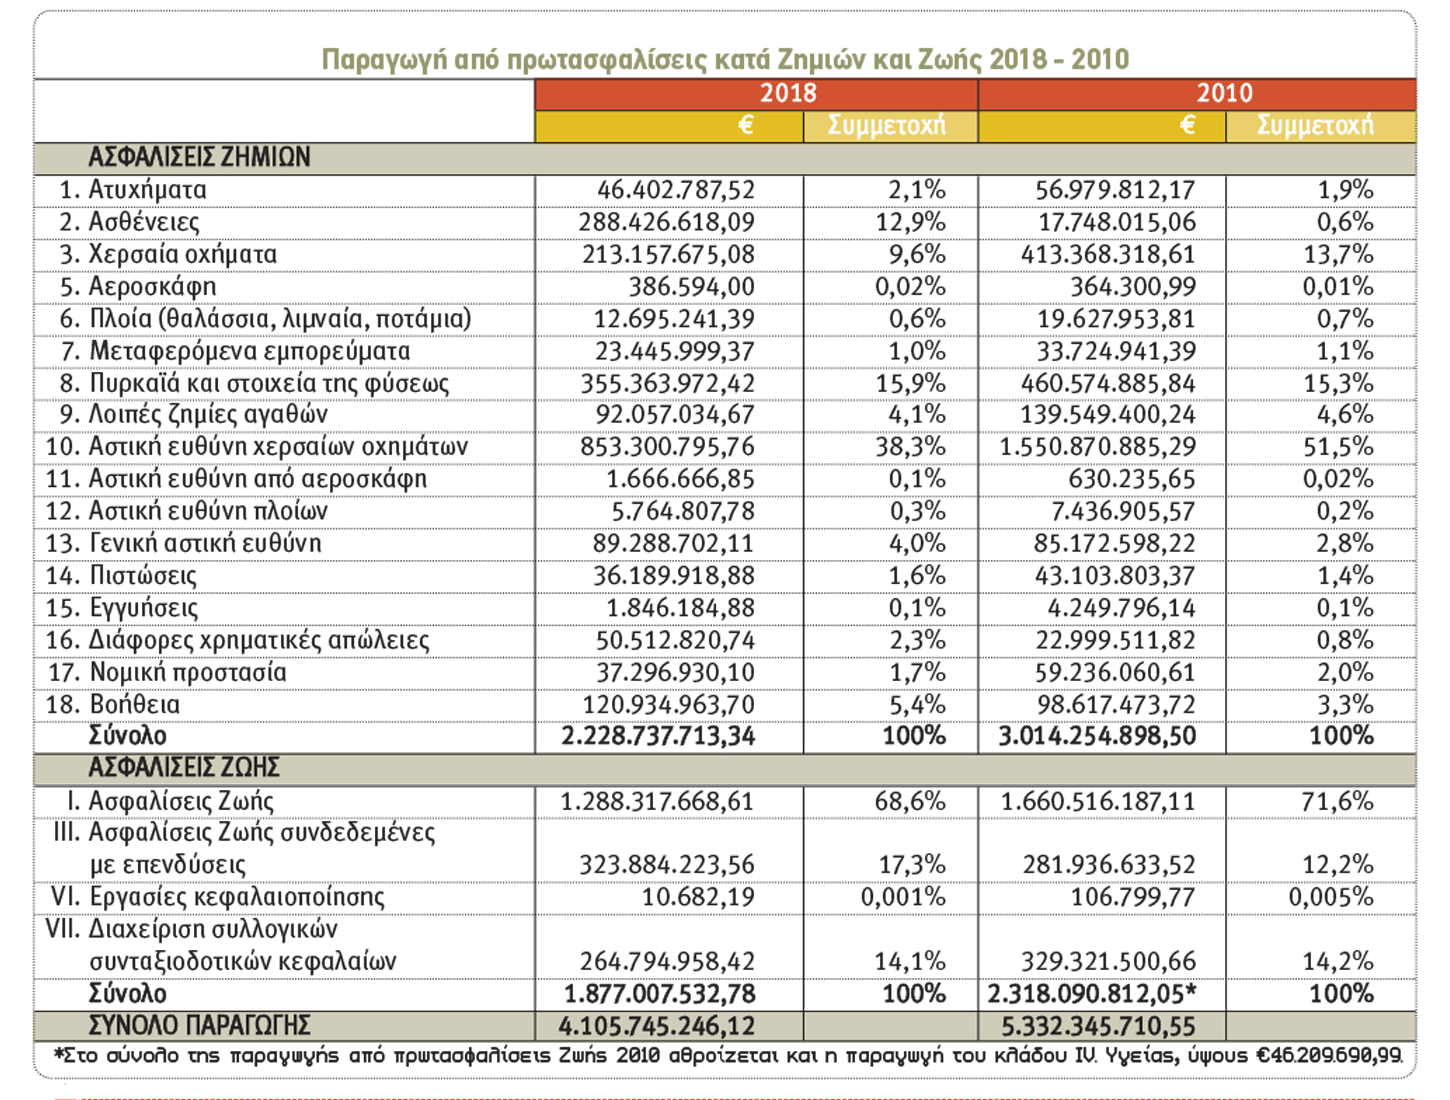 Μείον €1,2 δις η παραγωγή ασφαλίστρων του 2018 σε σχέση με το 2010